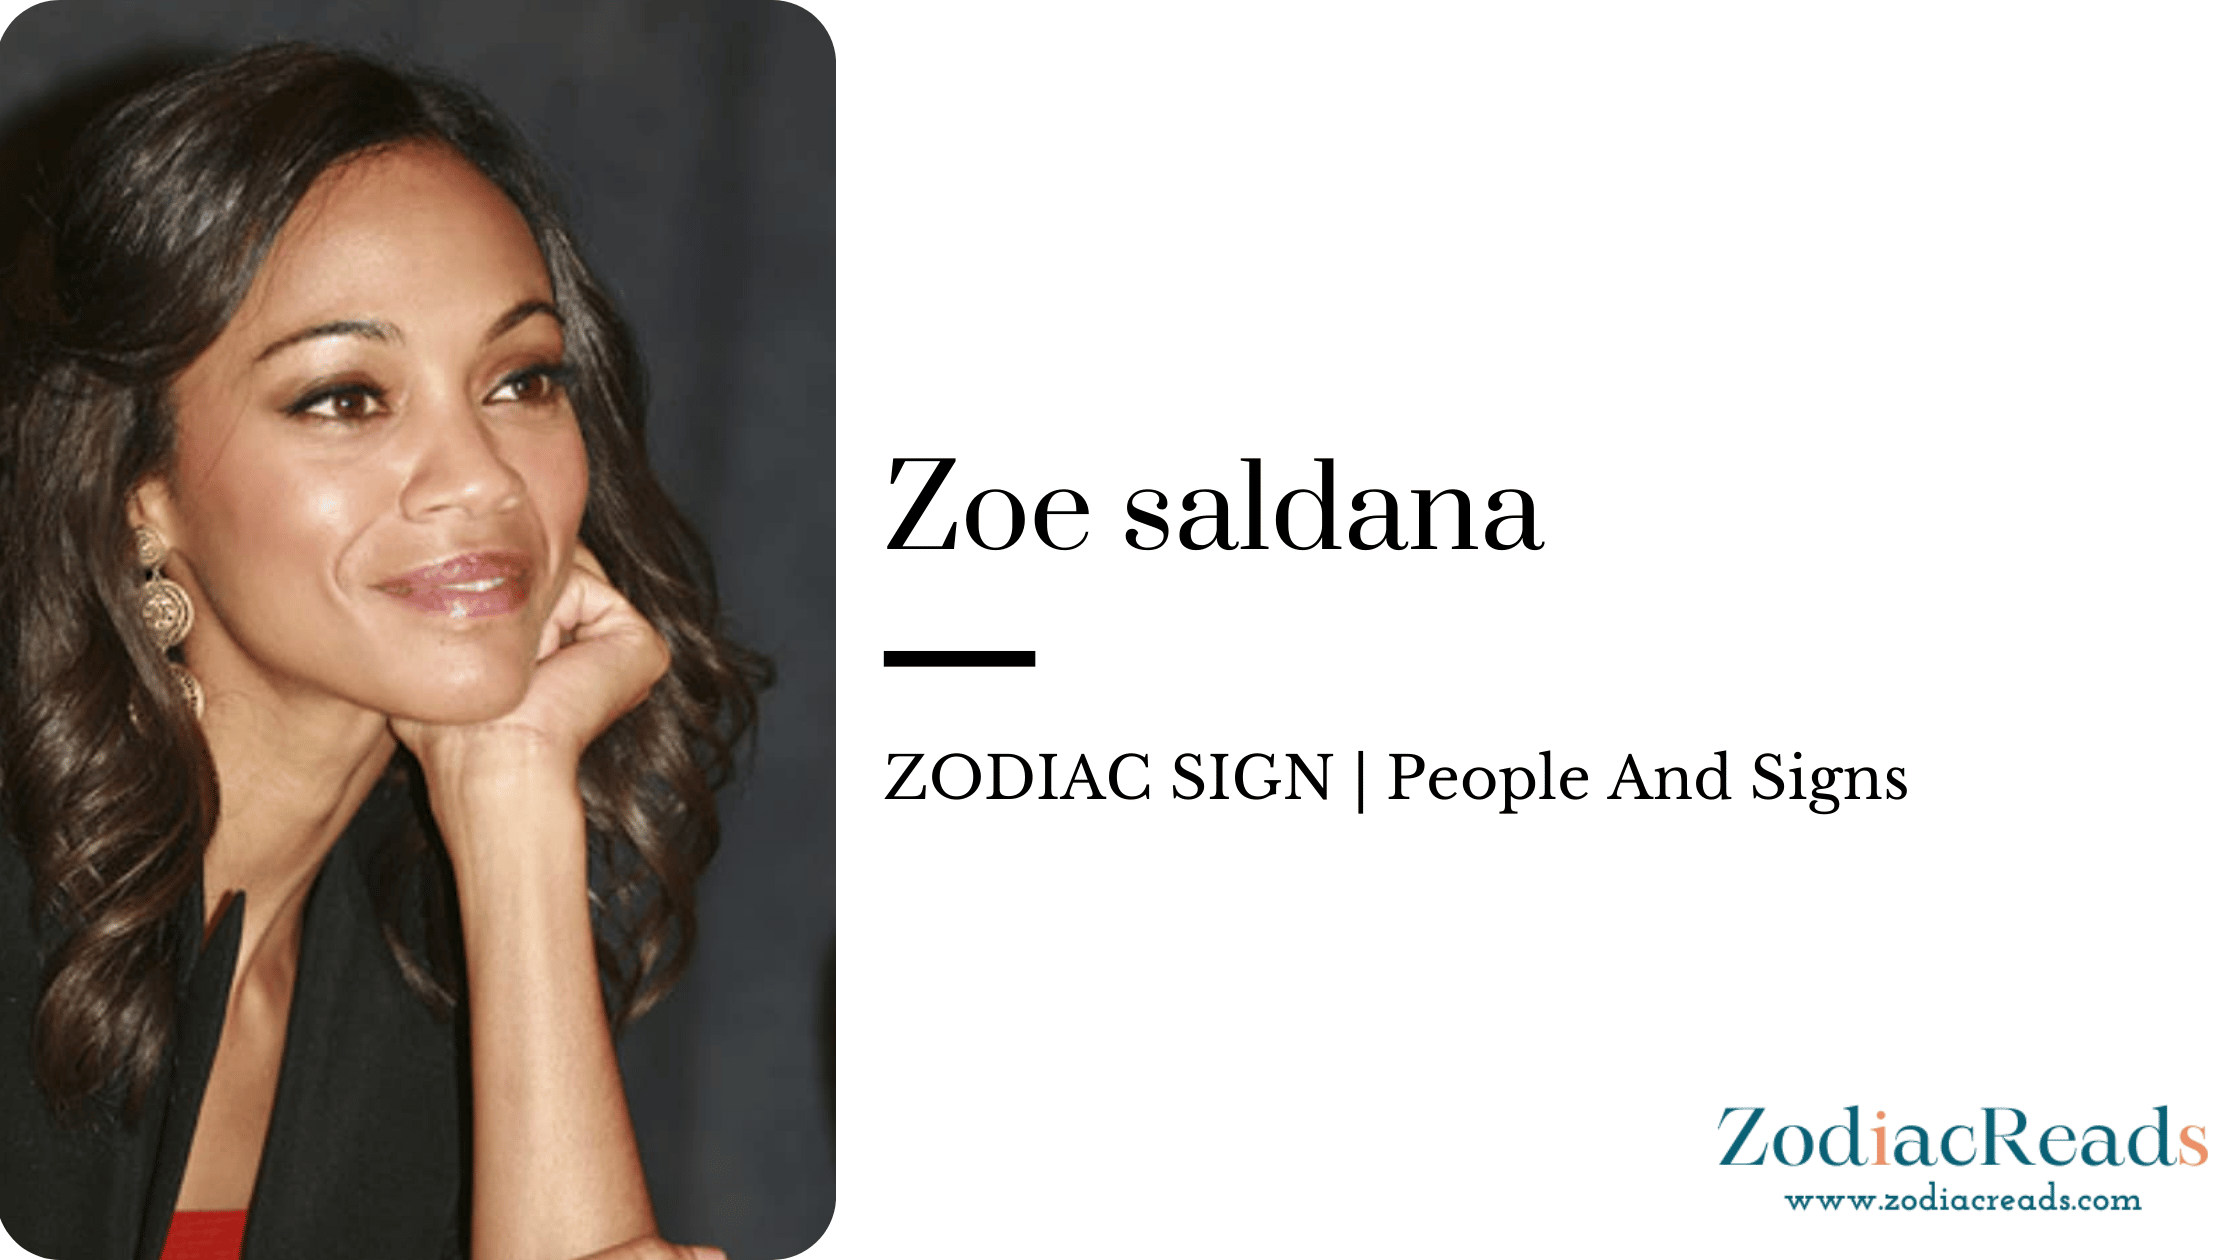 Zoe saldana zodiac